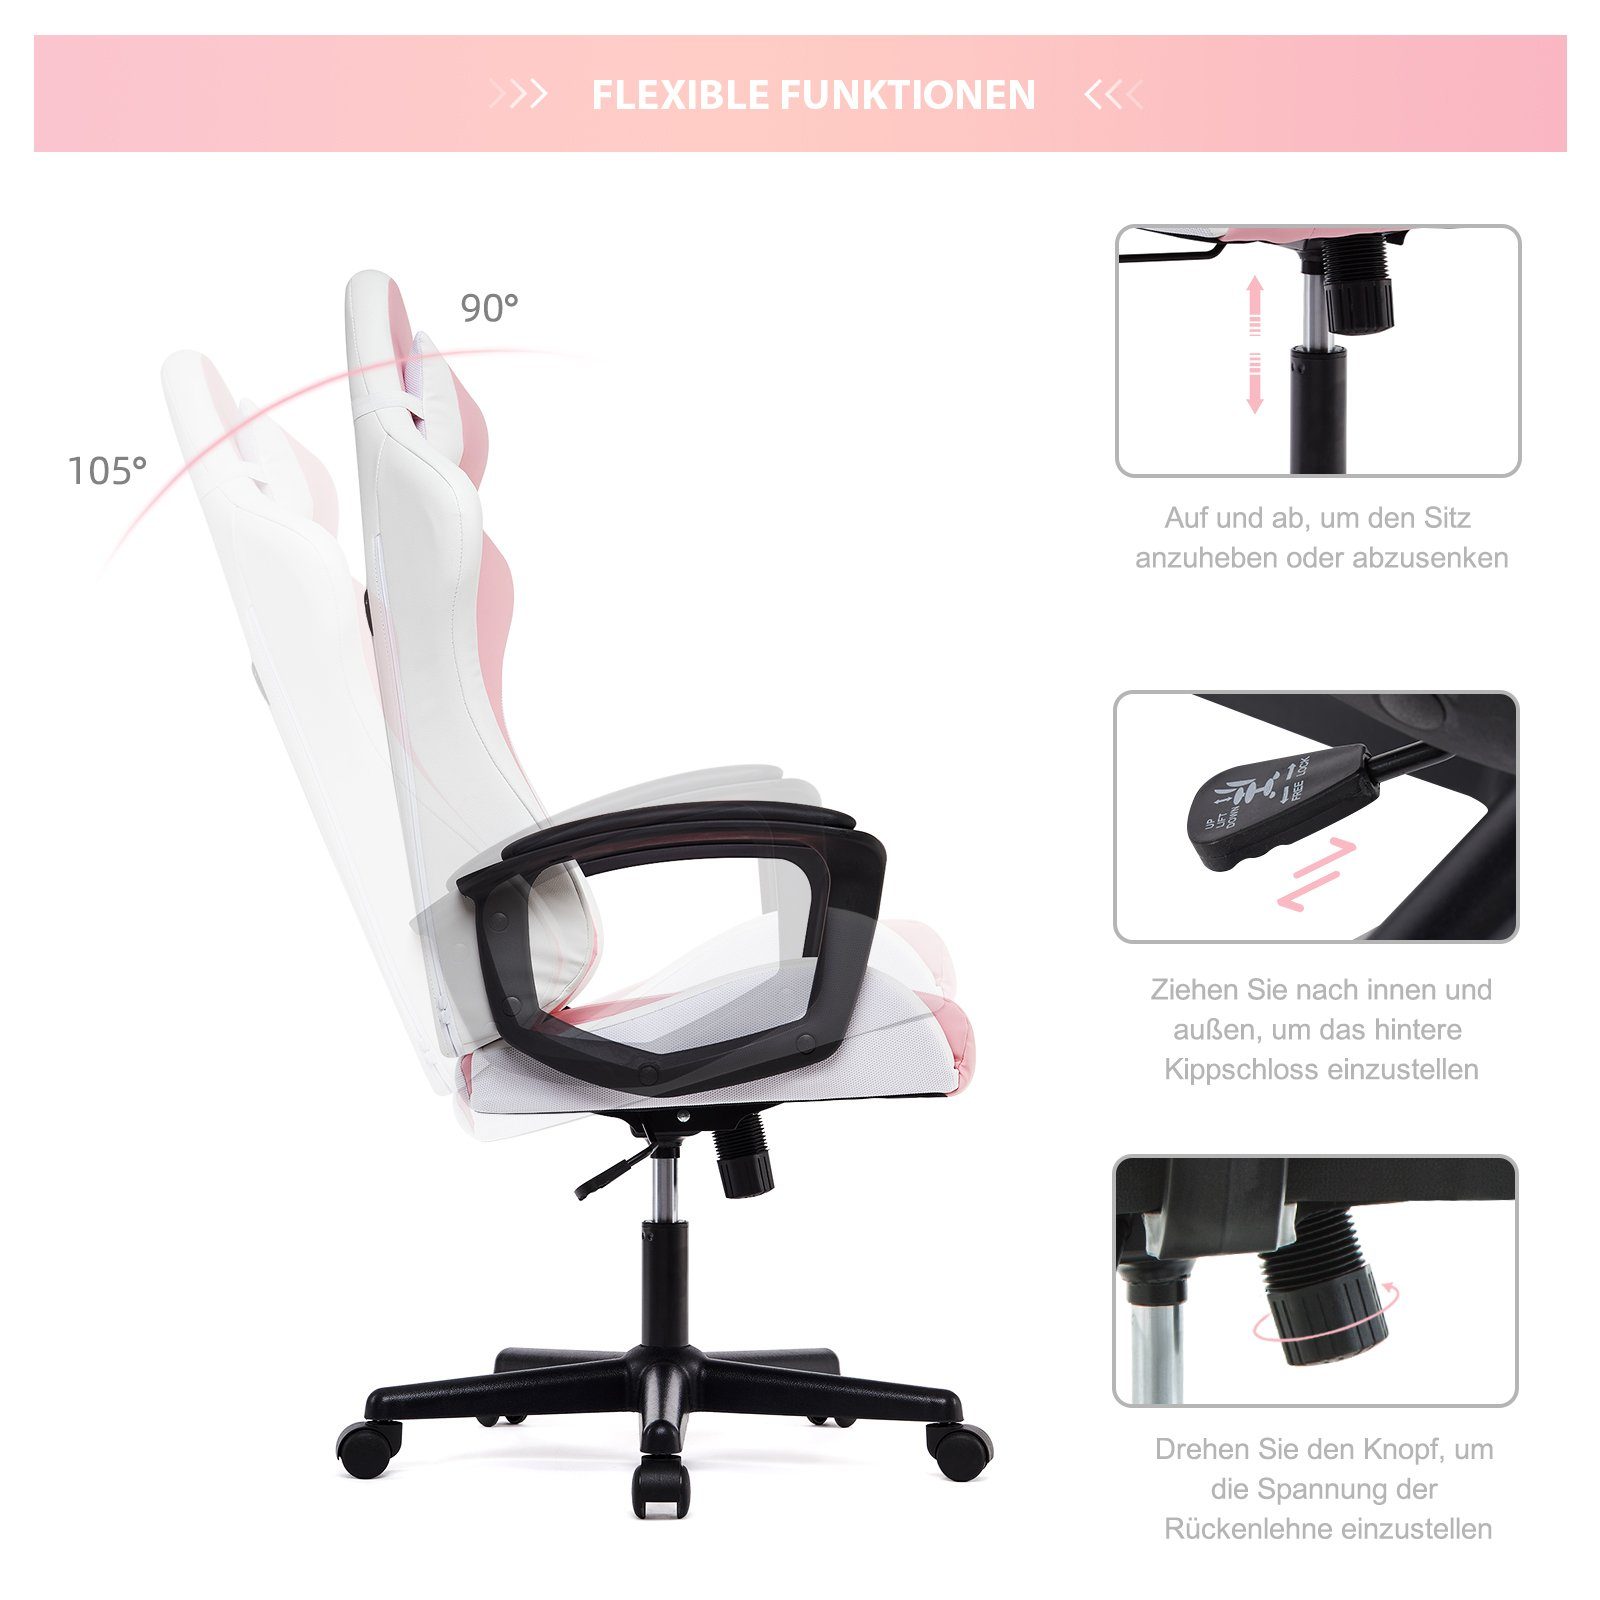 mit WM Ergonomischer hoher Heart Gaming-Stuhl Rückenlehne rosa Verstellbarer Schreibtischstuhl Intimate